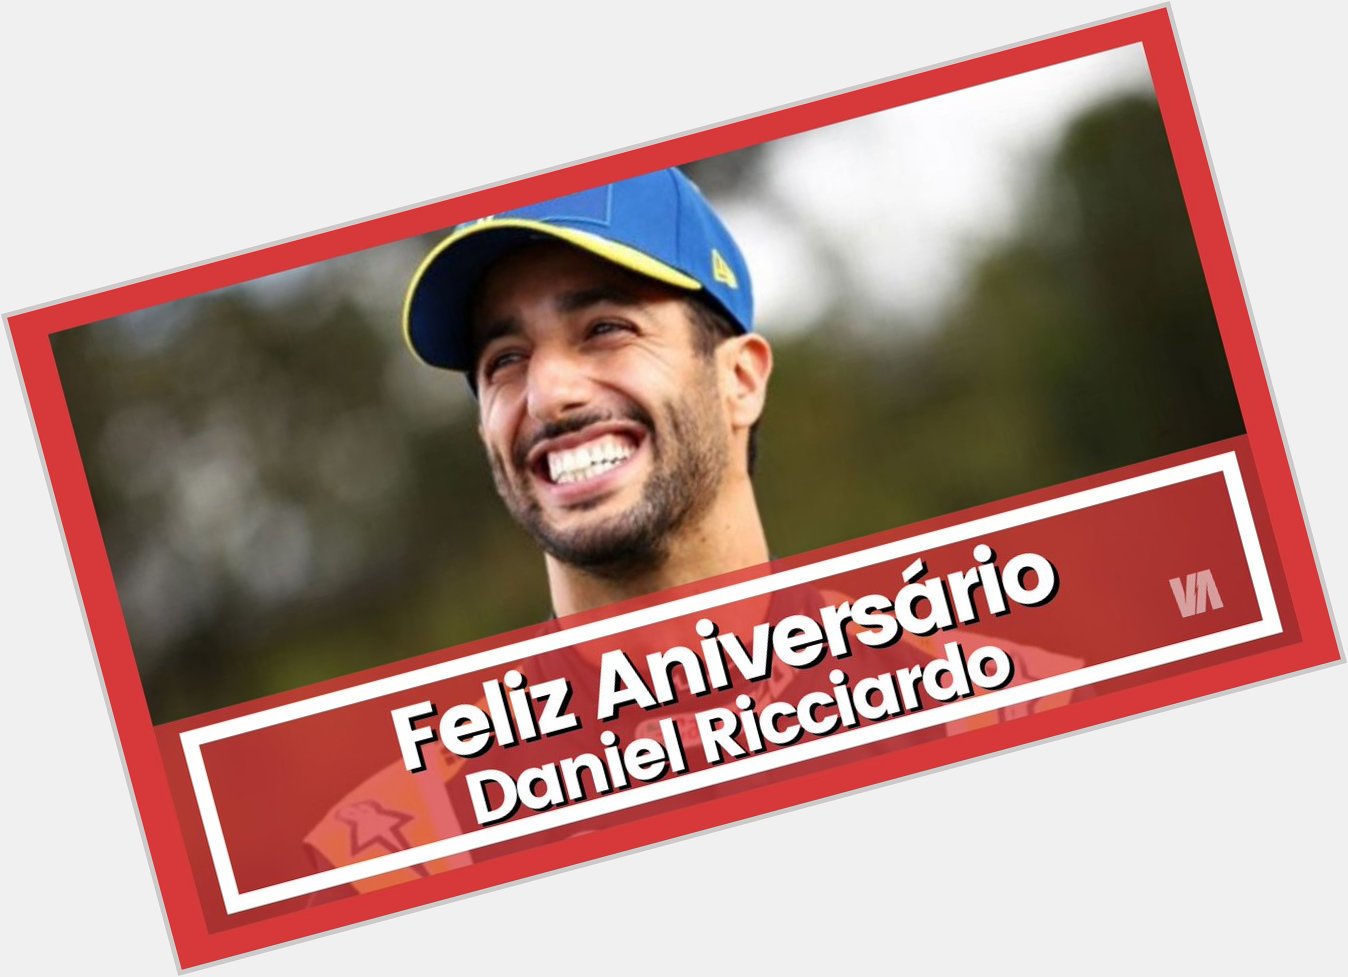 Hoje, Daniel Ricciardo faz 32 anos!

Desejamos um \"Happy Birthday\" ao piloto australiano. 